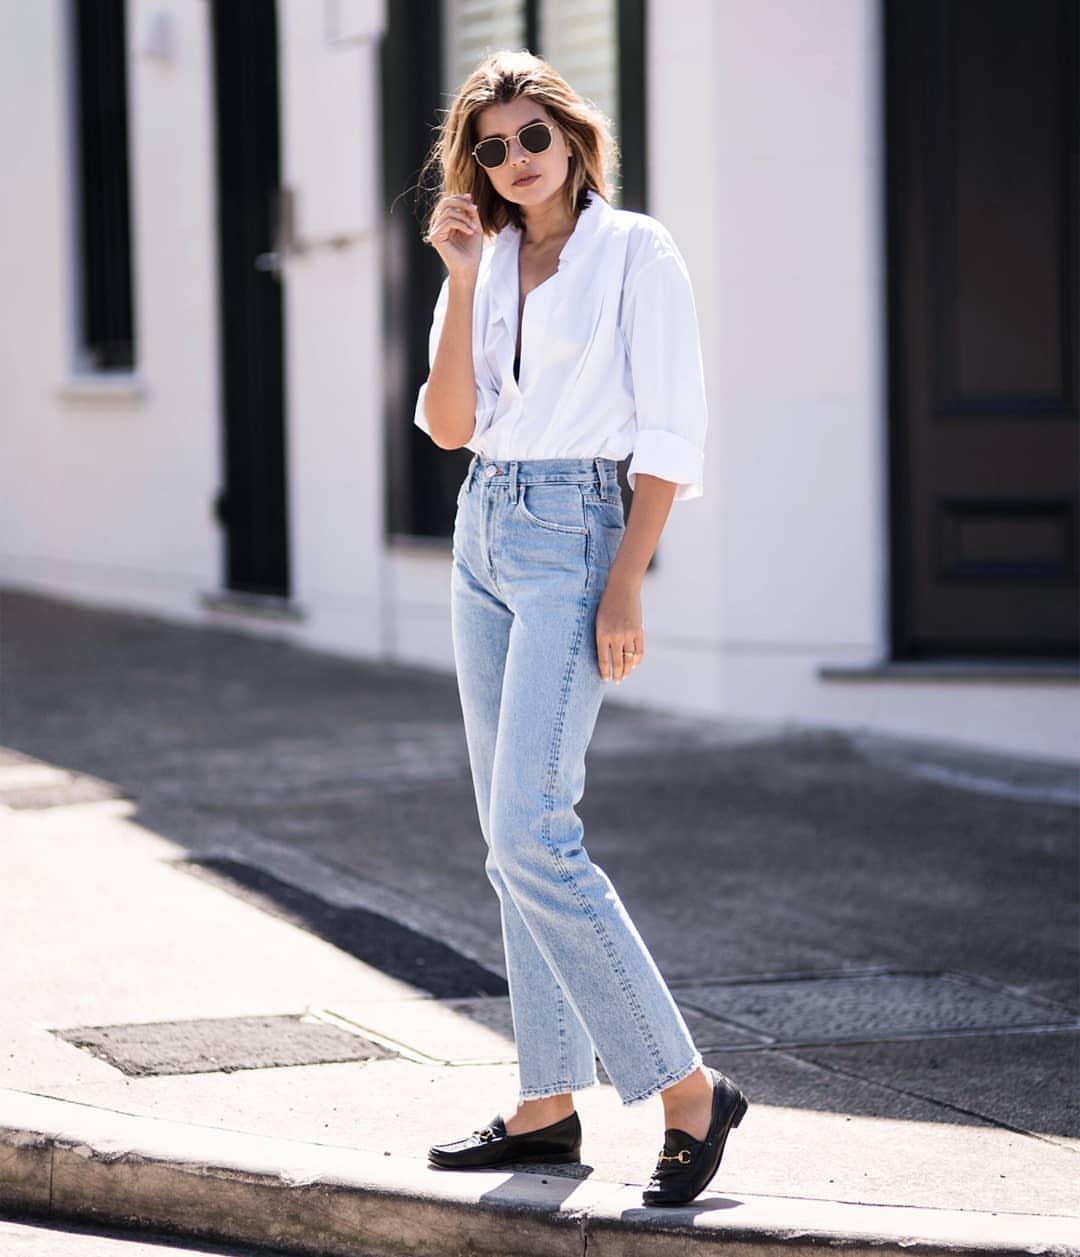 Os jeans mamãe combinam as tendências da moda feminina, camiseta branca, óculos escuros retrô, mocassins